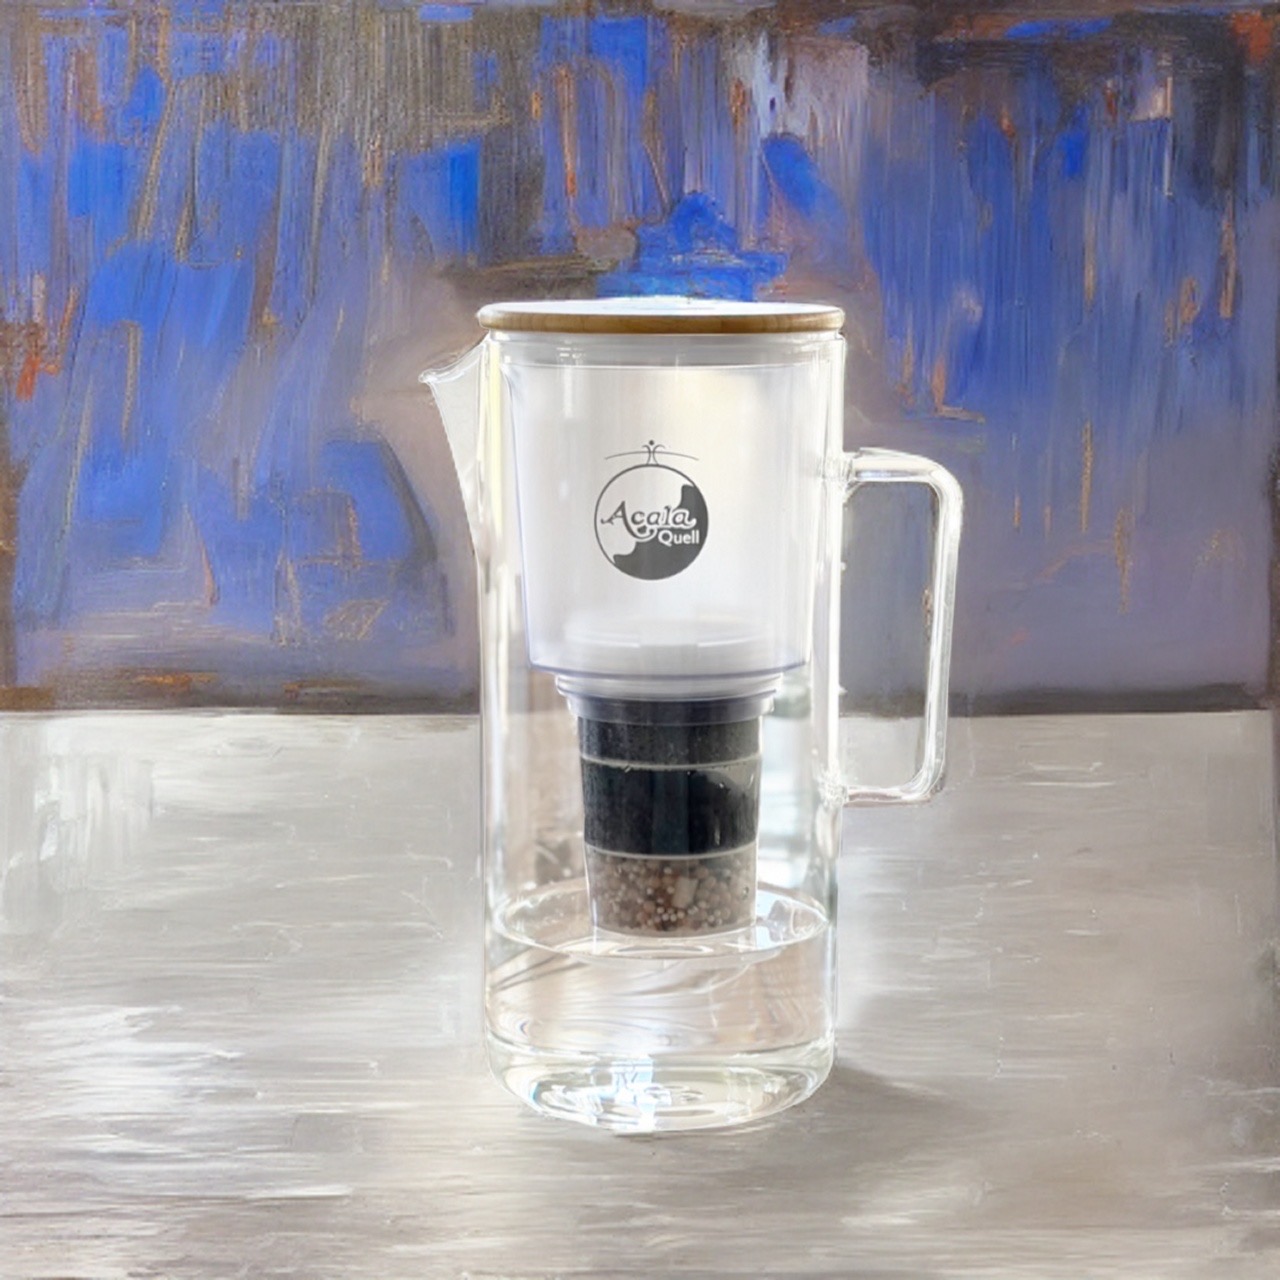 Acala Glas Kannenfilter als kunstvolle Darstellung vor blauem Hintergrund.